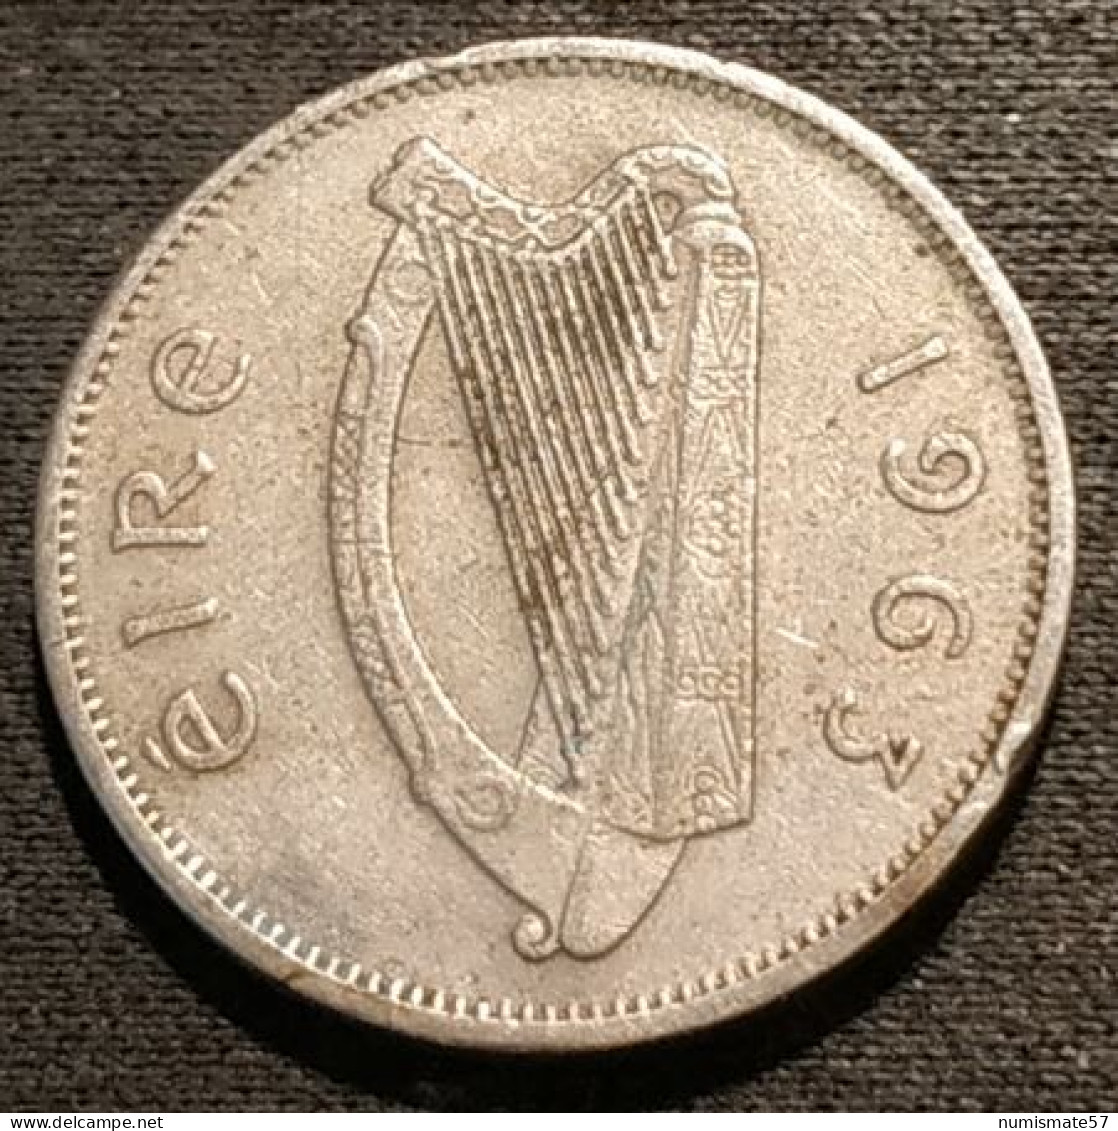 IRLANDE - EIRE - 6 Pingin / 1 Reul 1963 - KM 13a - Chien - Dog - IRELAND - Ireland